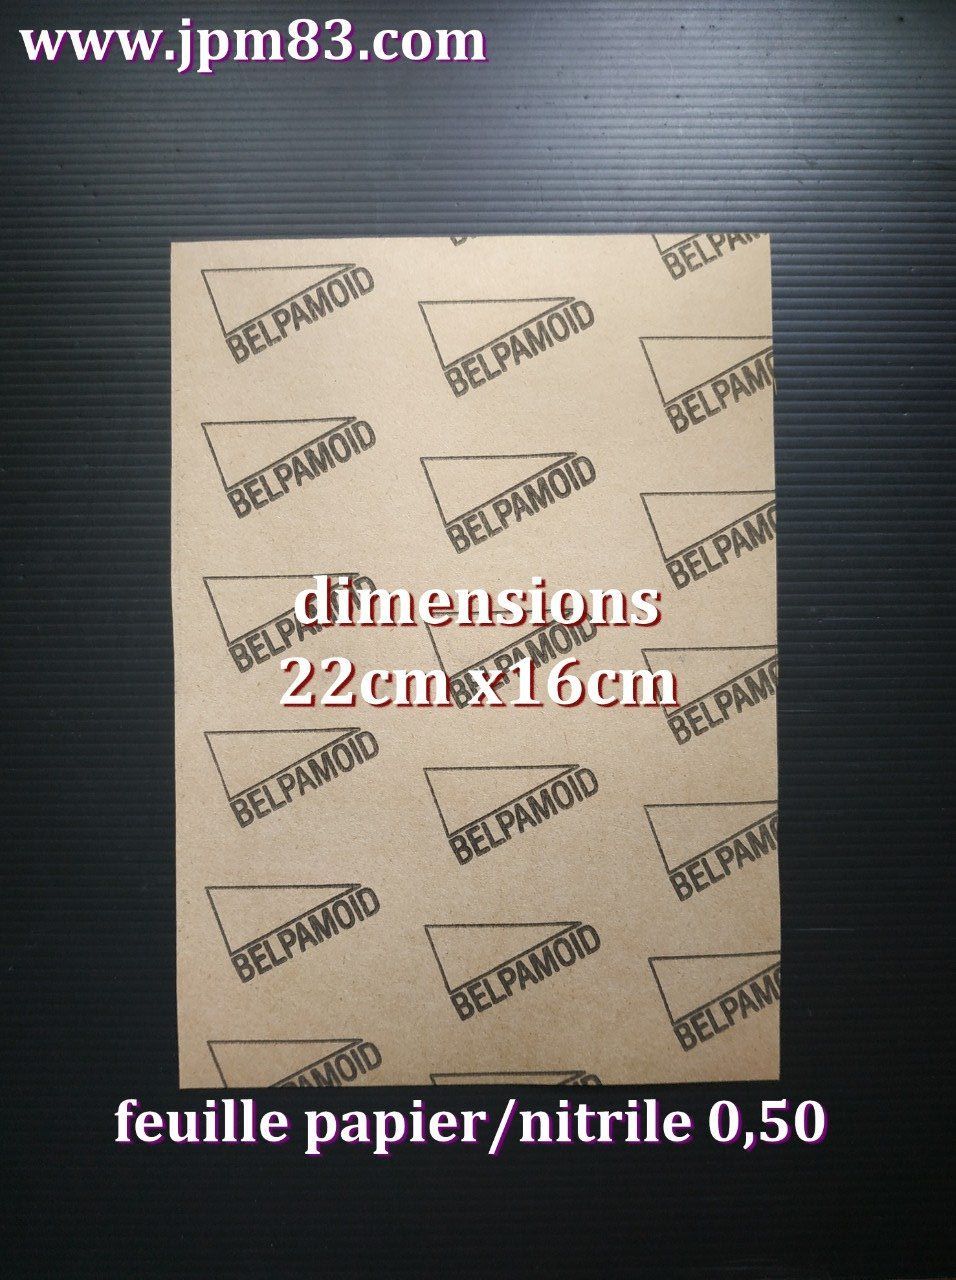 1 FEUILLE papier nitrile ep. 0.50  16x22cm